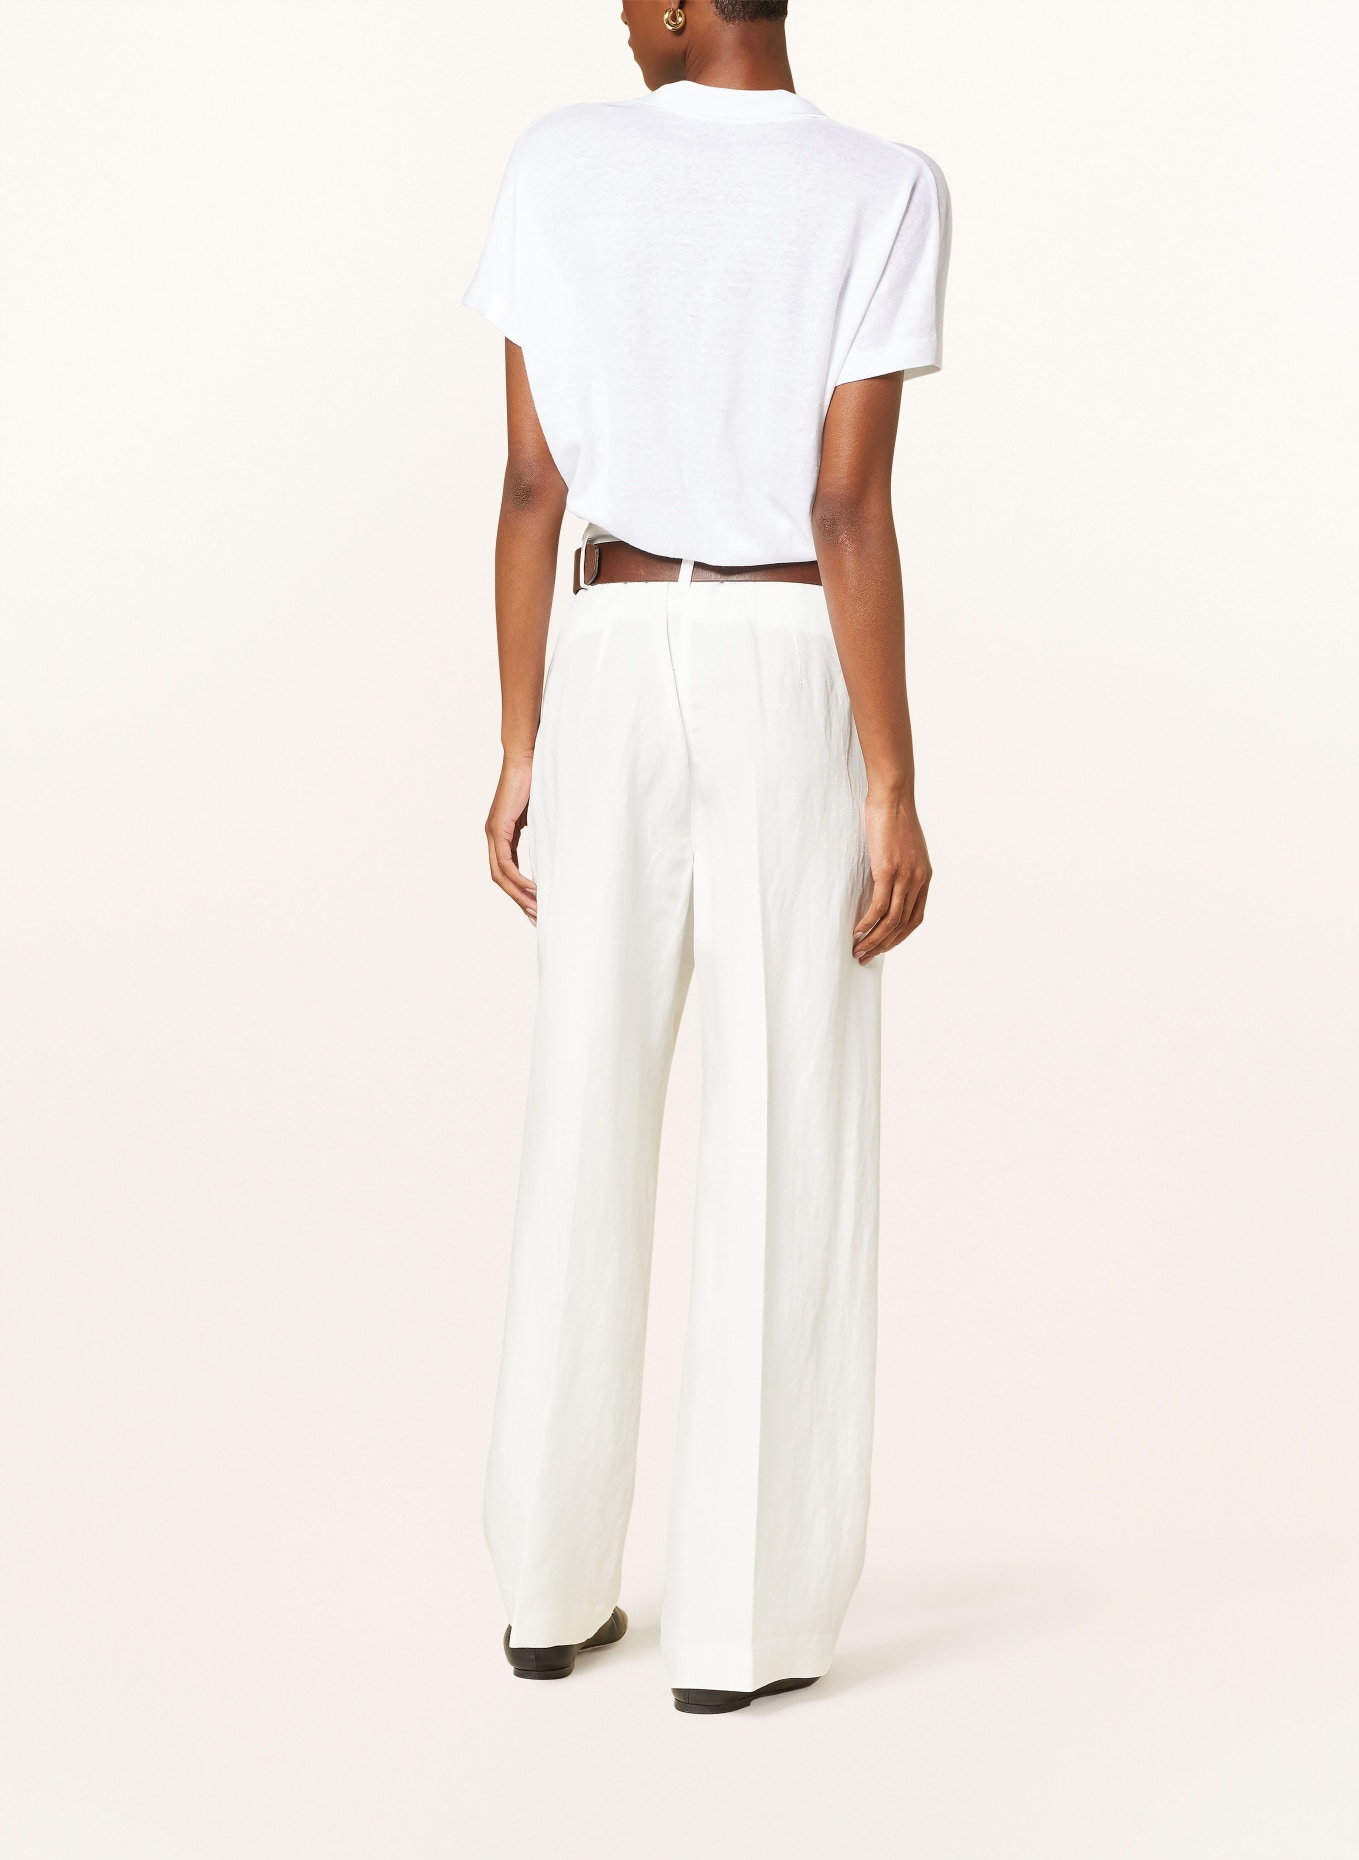 RAFFAELLO ROSSI Trousers MAYLA with linen, Color: CREAM (Image 3)